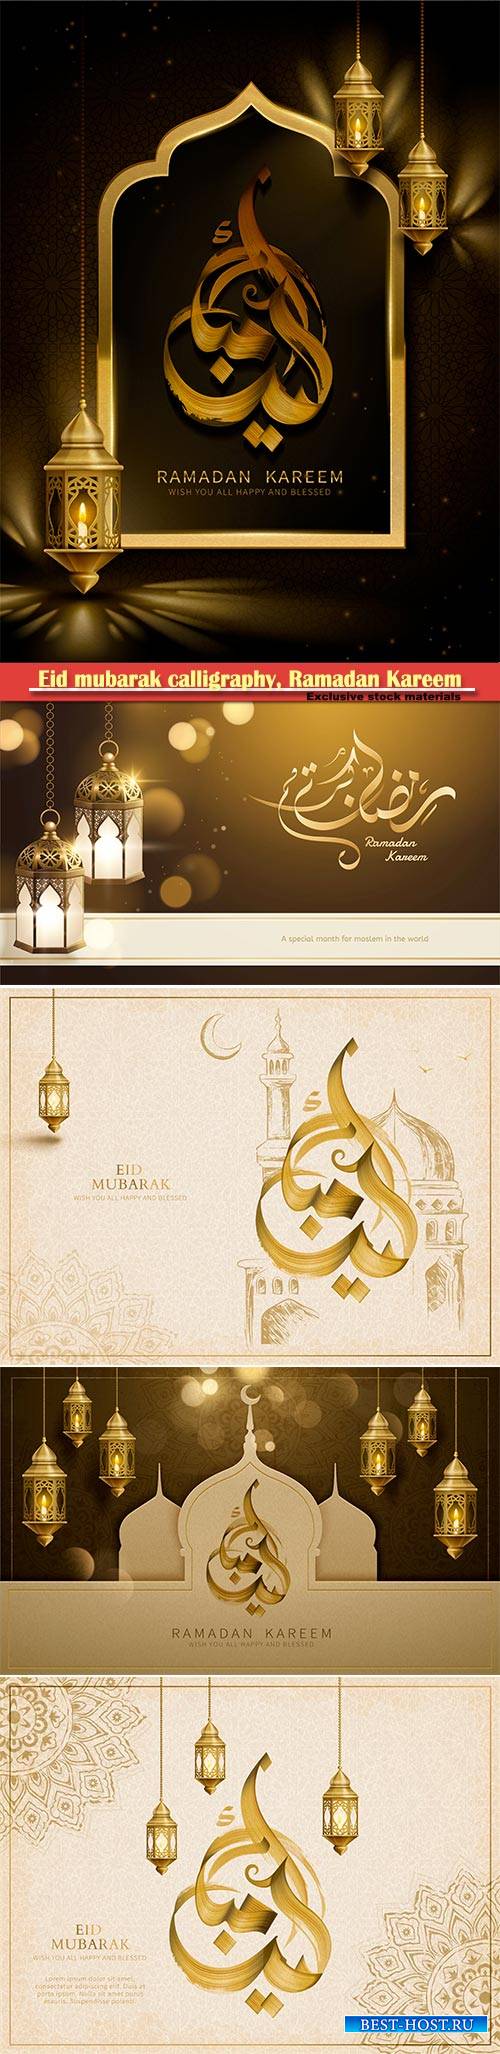 Eid mubarak calligraphy, Ramadan Kareem vector card # 7